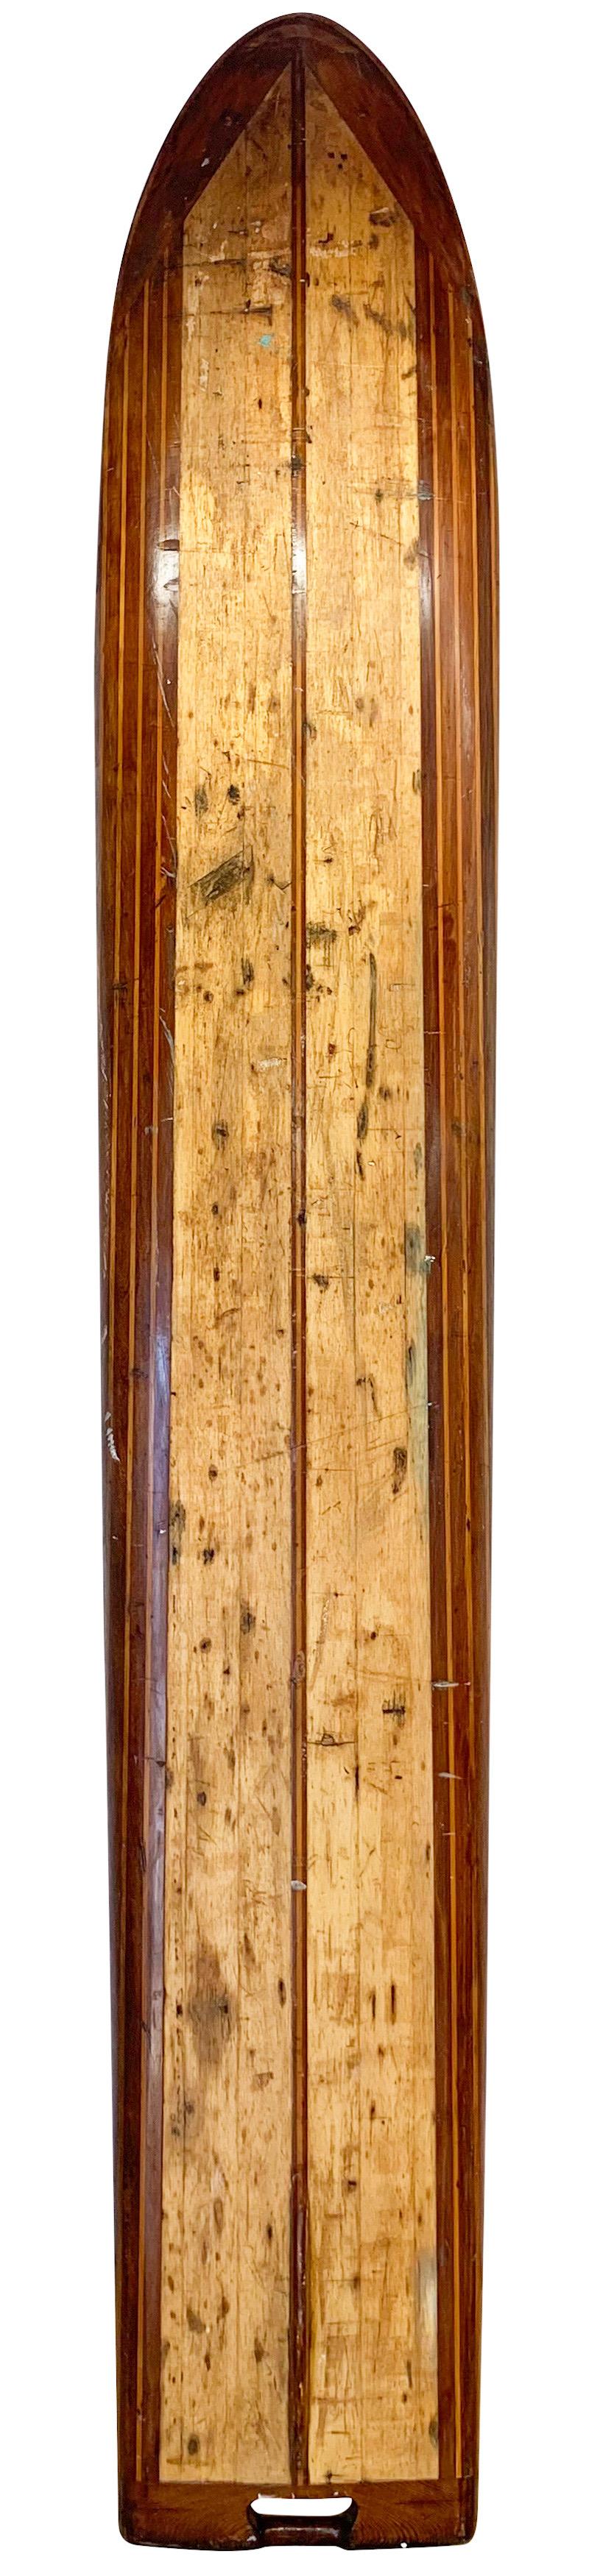 Ende der 1930er Jahre Pacific System Homes Holz Surfbrett. Ein kompliziertes Design aus Rotholz und Kiefernholz. Schöne Verzierungen in Form von Nose- und Tail-Blöcken, komplett mit einer Surfboard-Finne im frühen Stil mit niedrigem Profil. Dieses